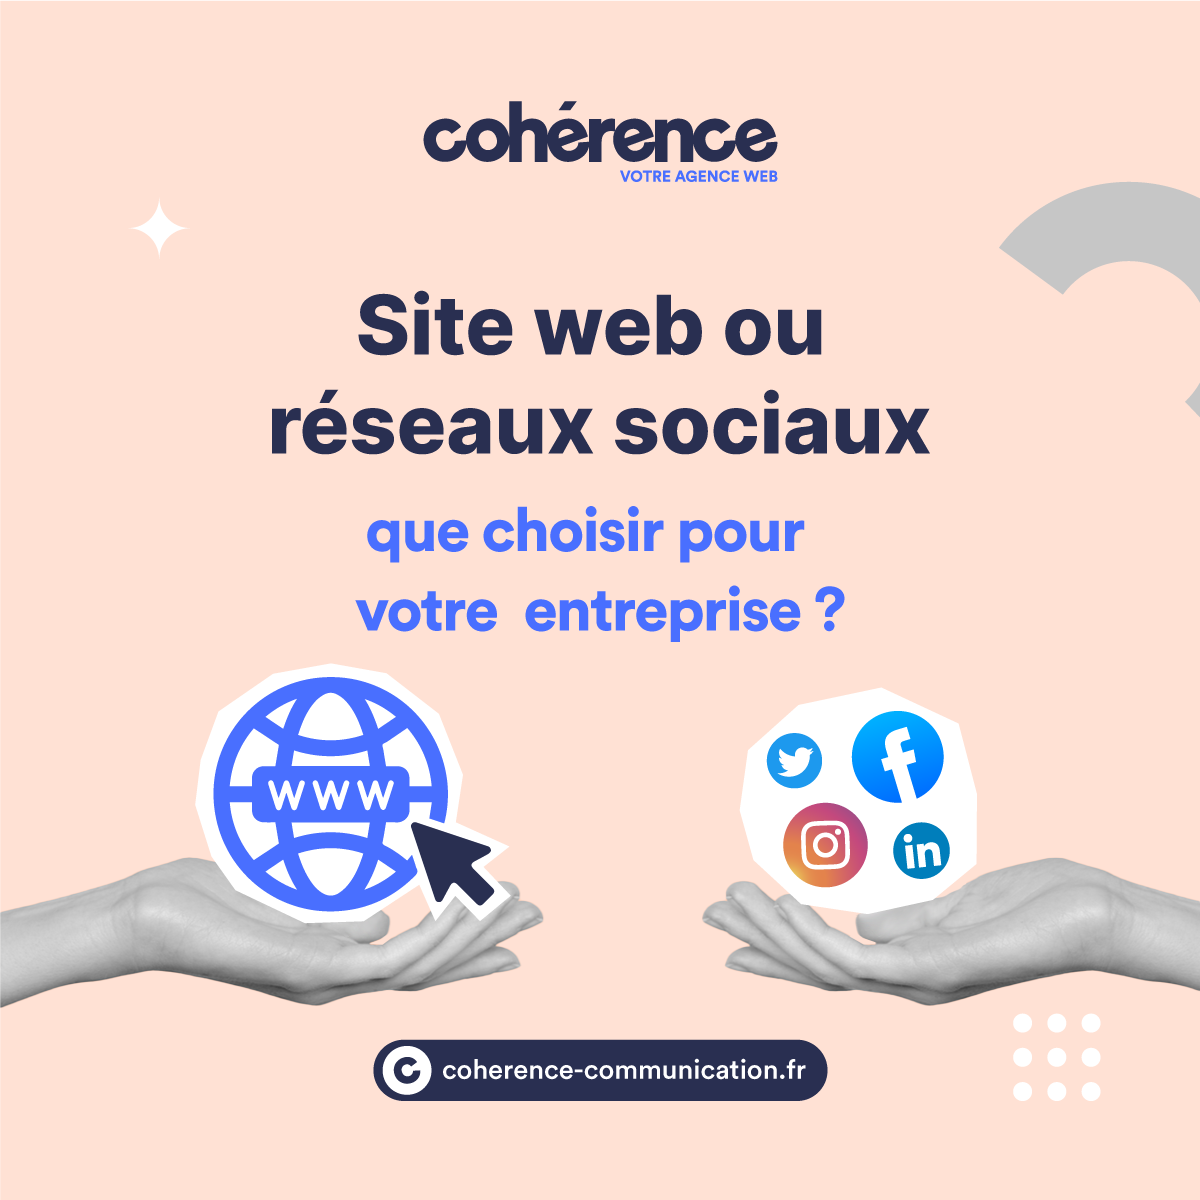 Coherence Agence Web A Rennes Site Web Ou Reseaux Sociaux Que Choisir Pour Votre Entreprise